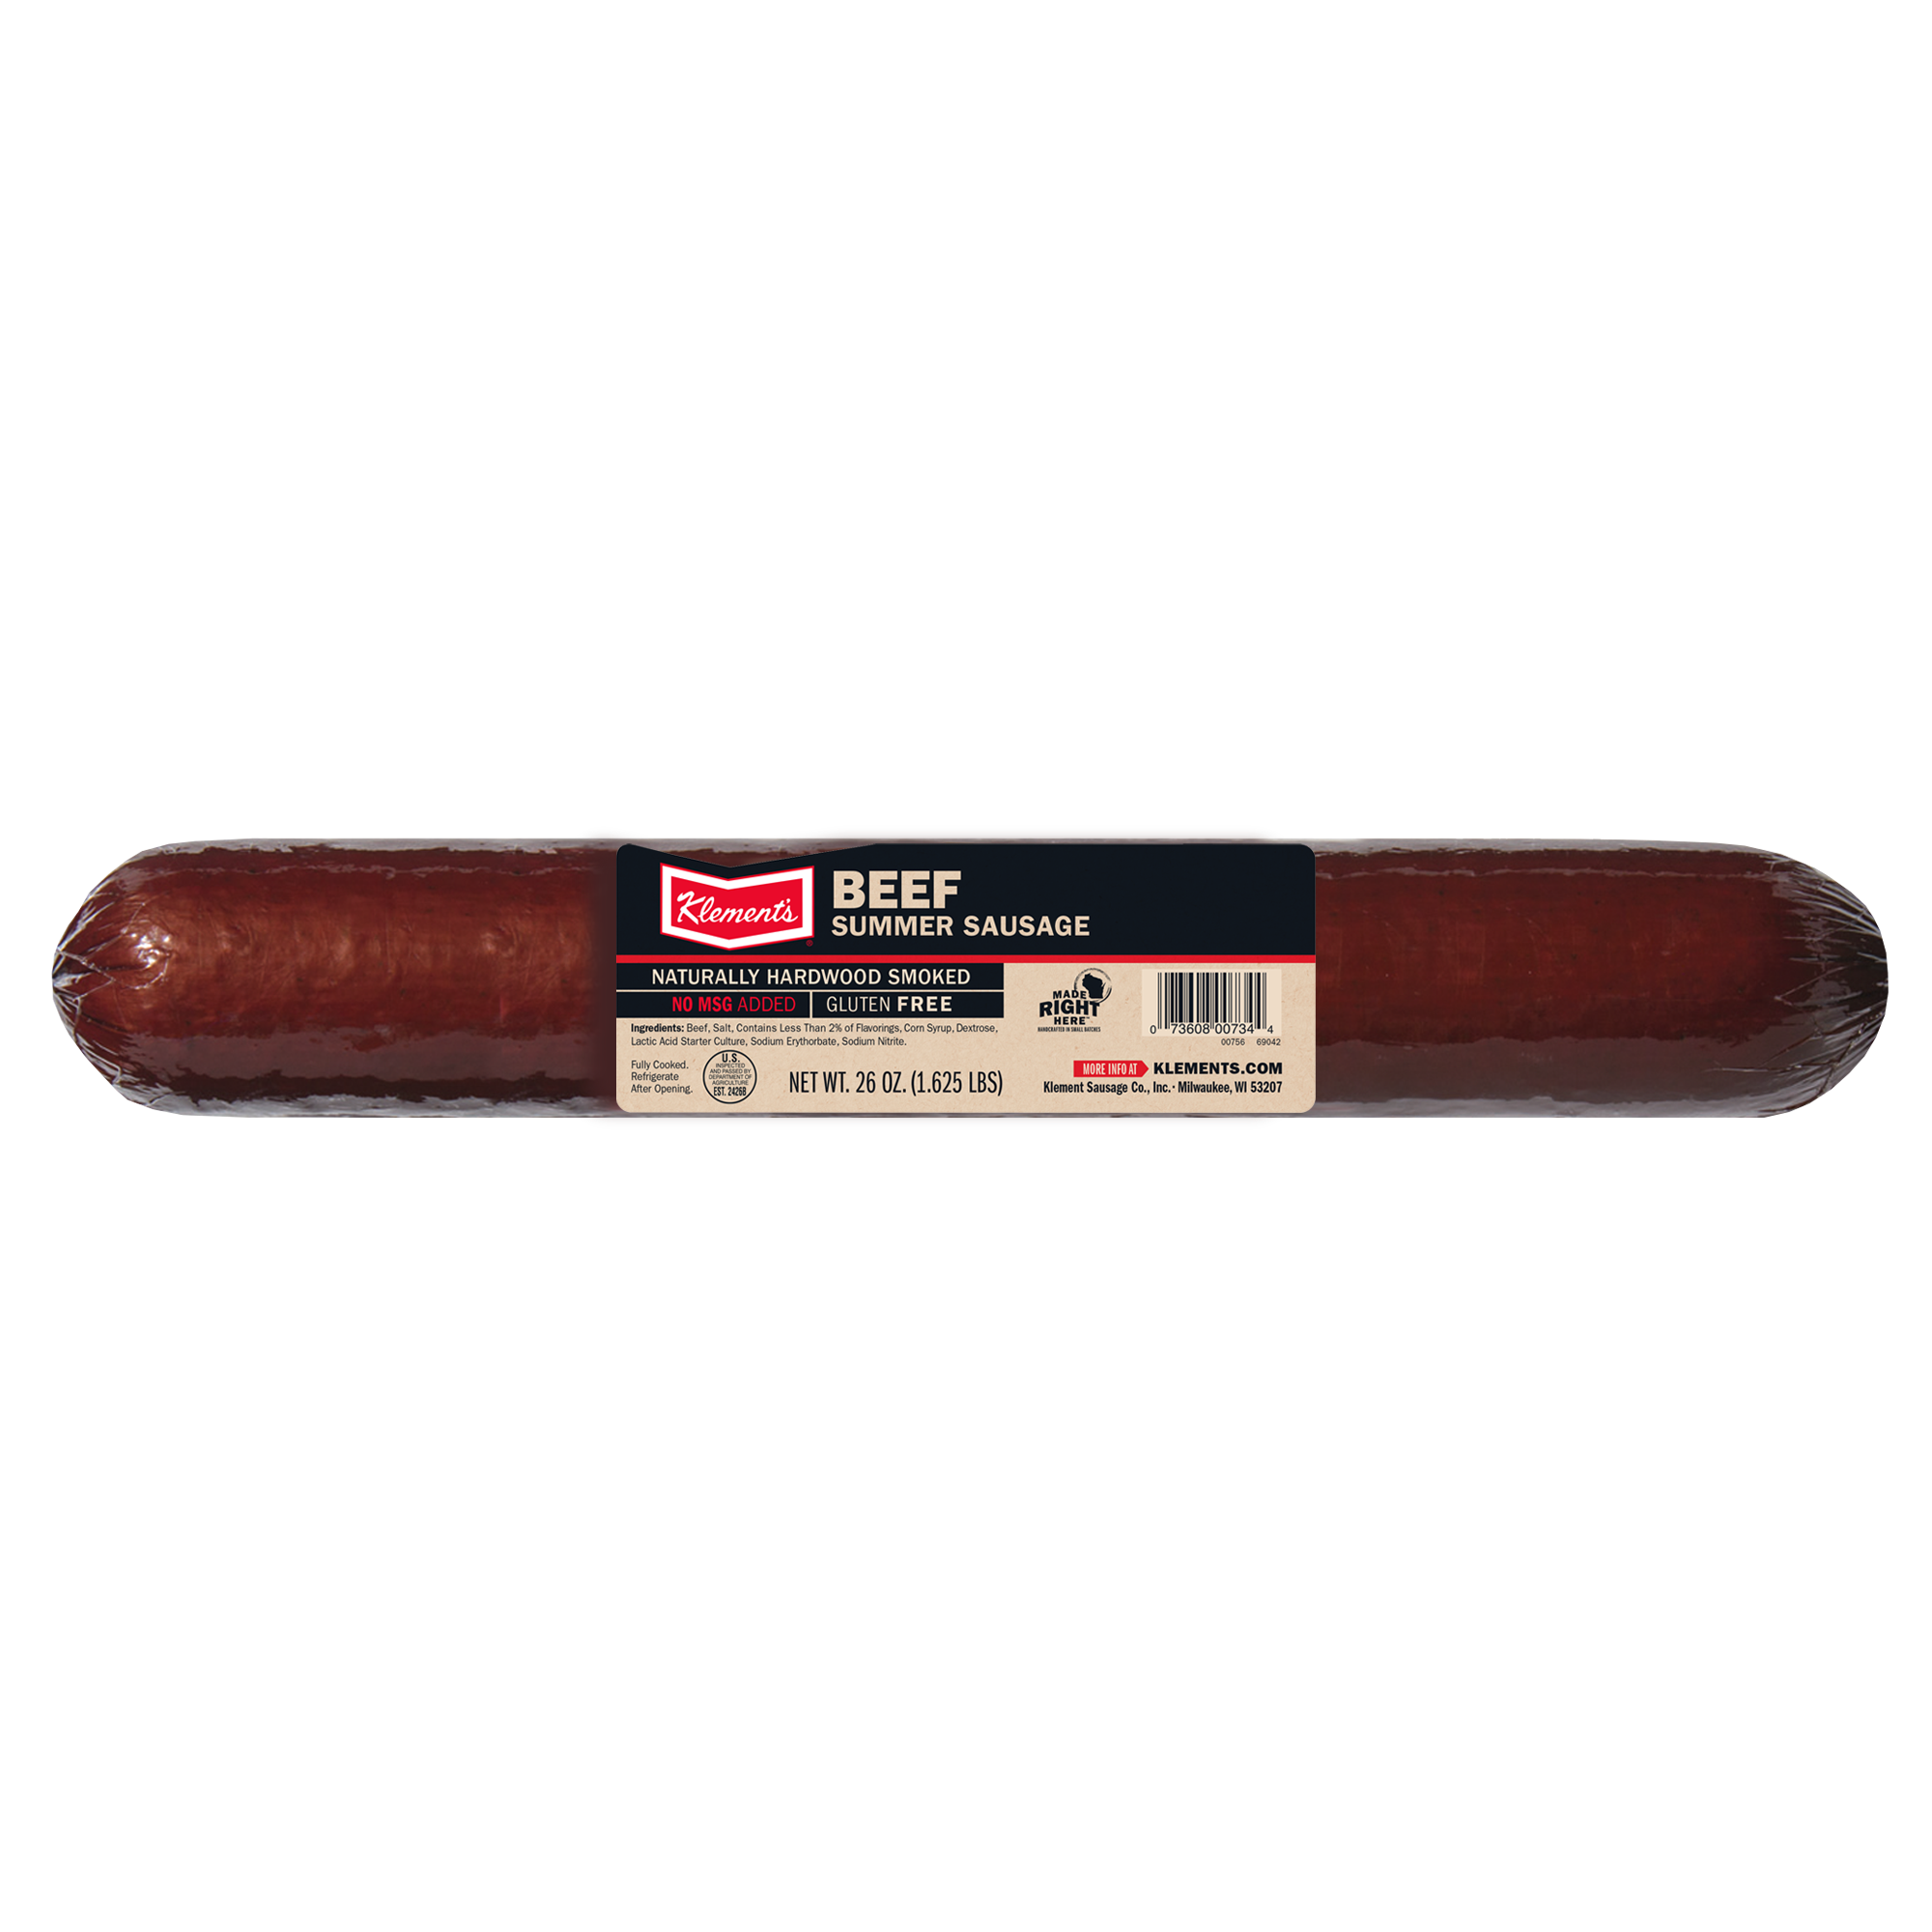 26 OZ Beef Summer Sausage